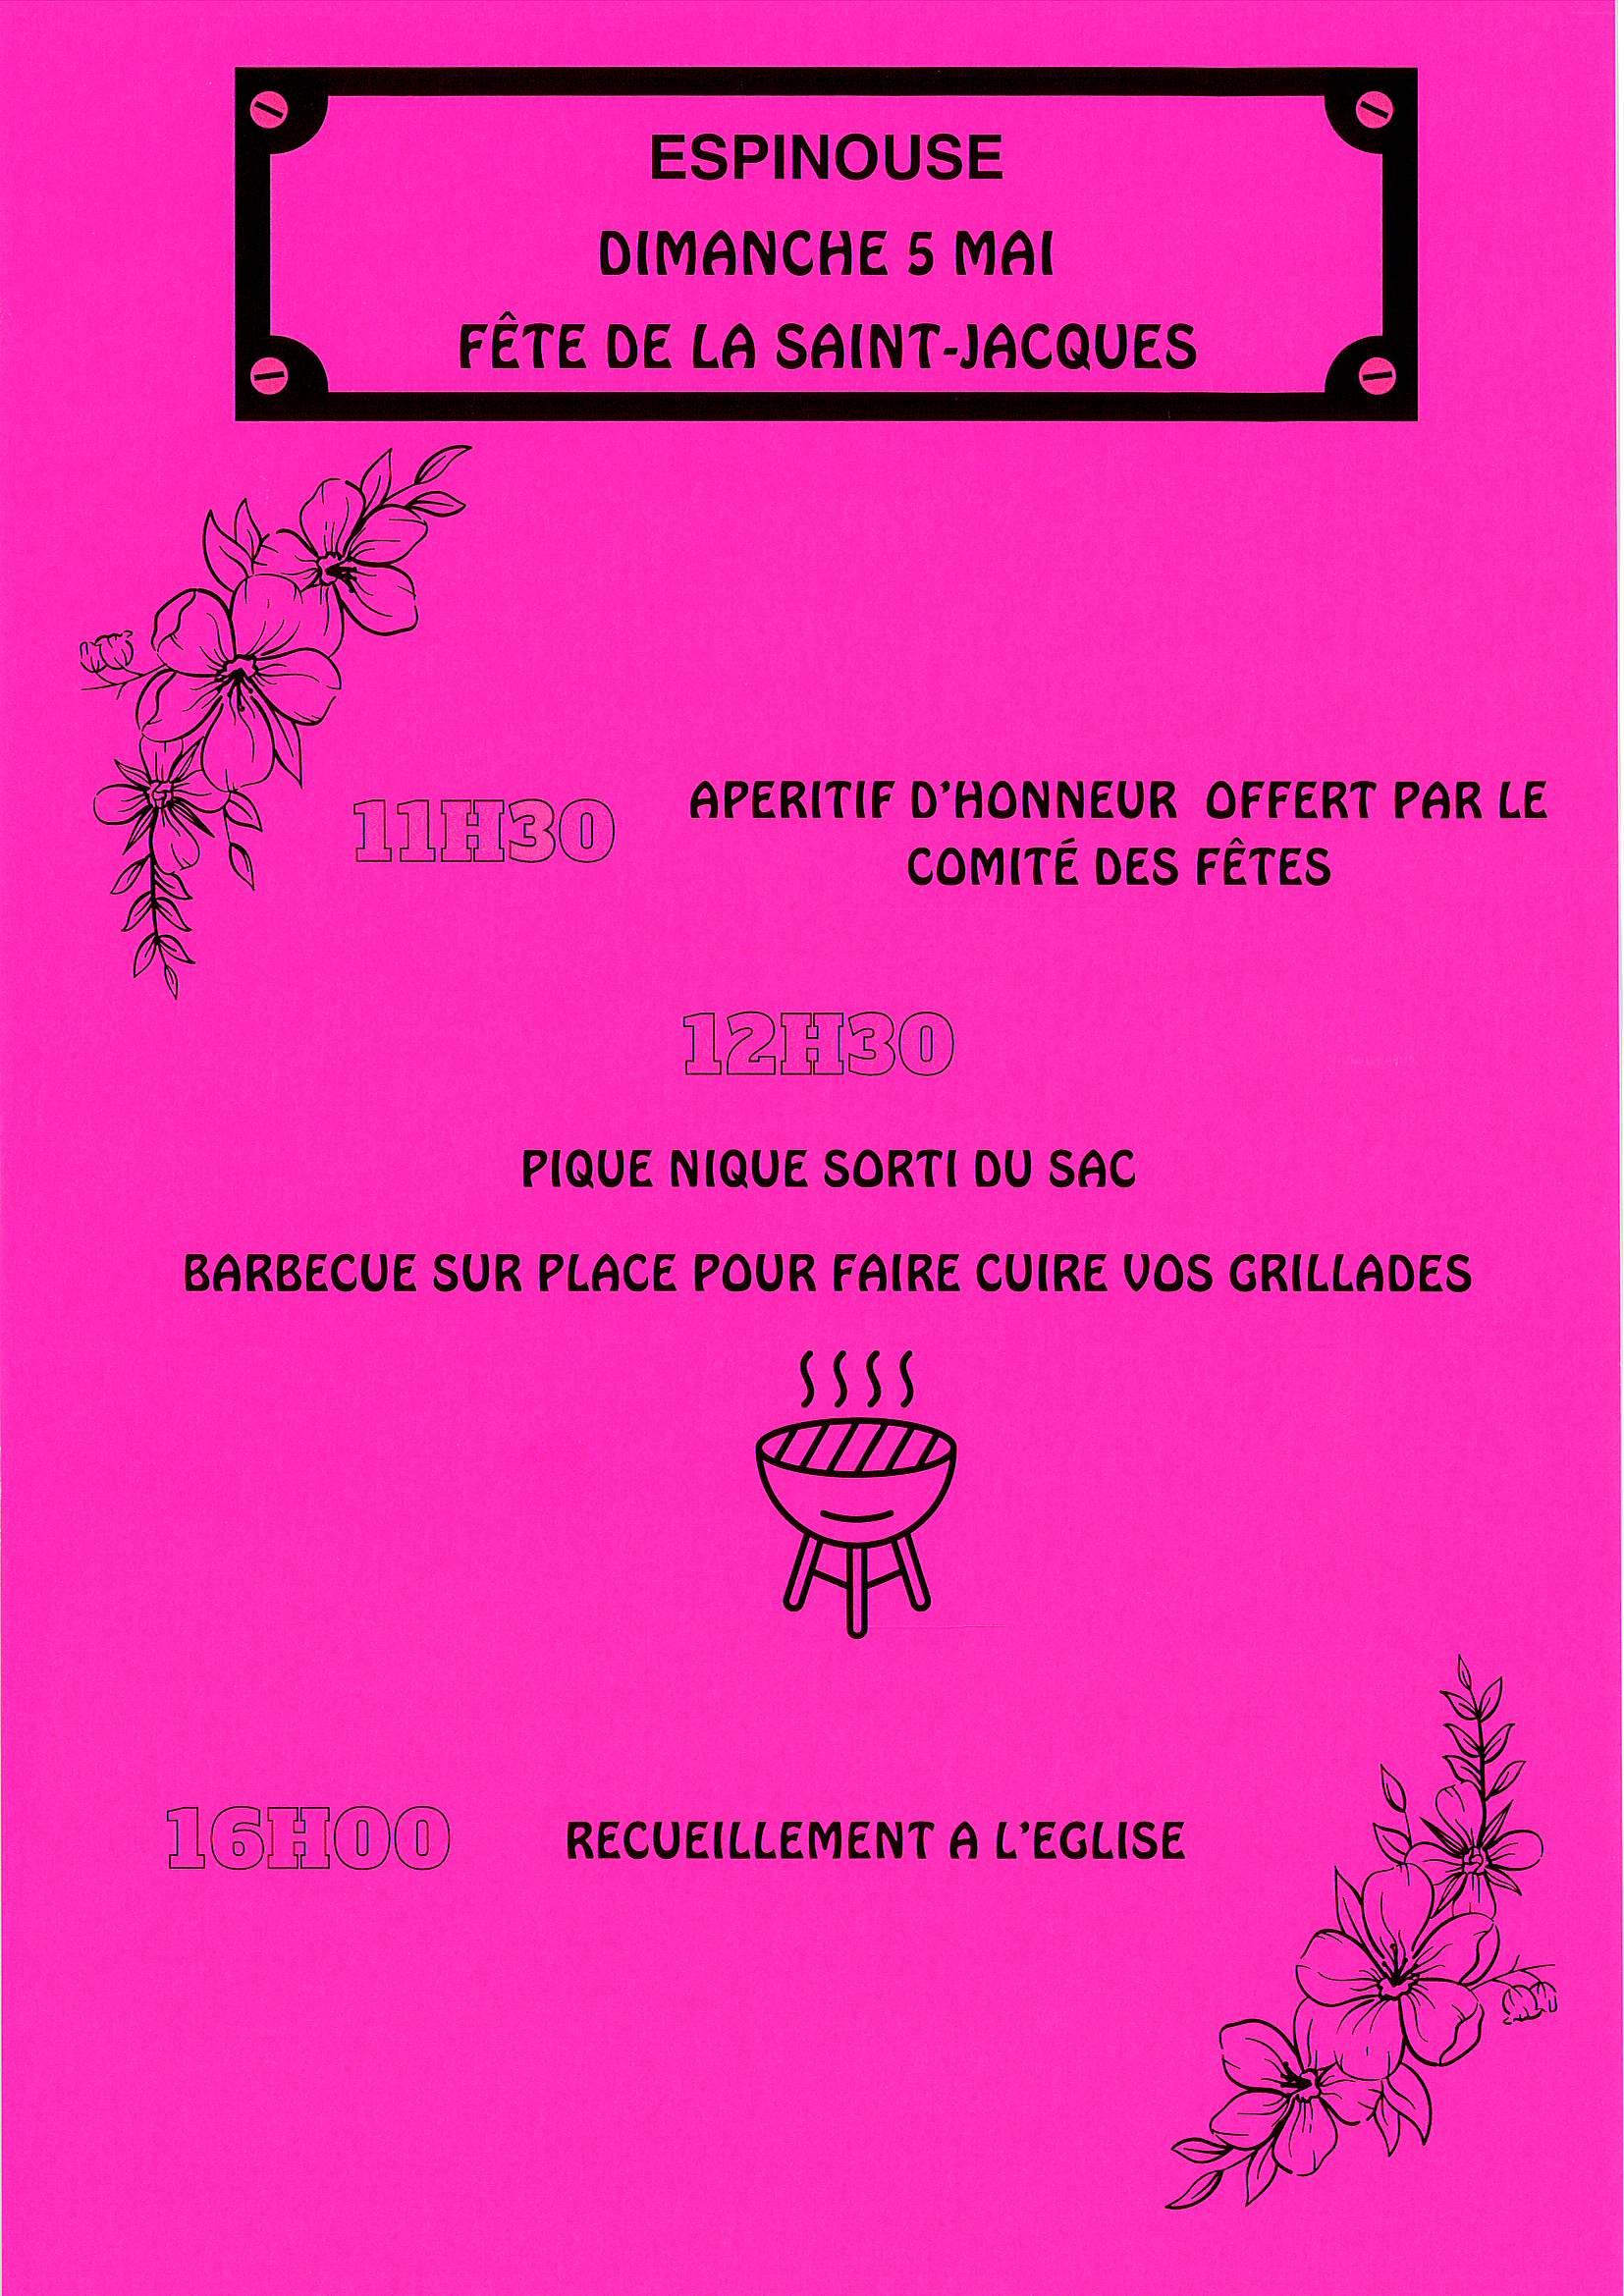 Image de couverture - Fête d'Espinouse - RDV le 05 mai